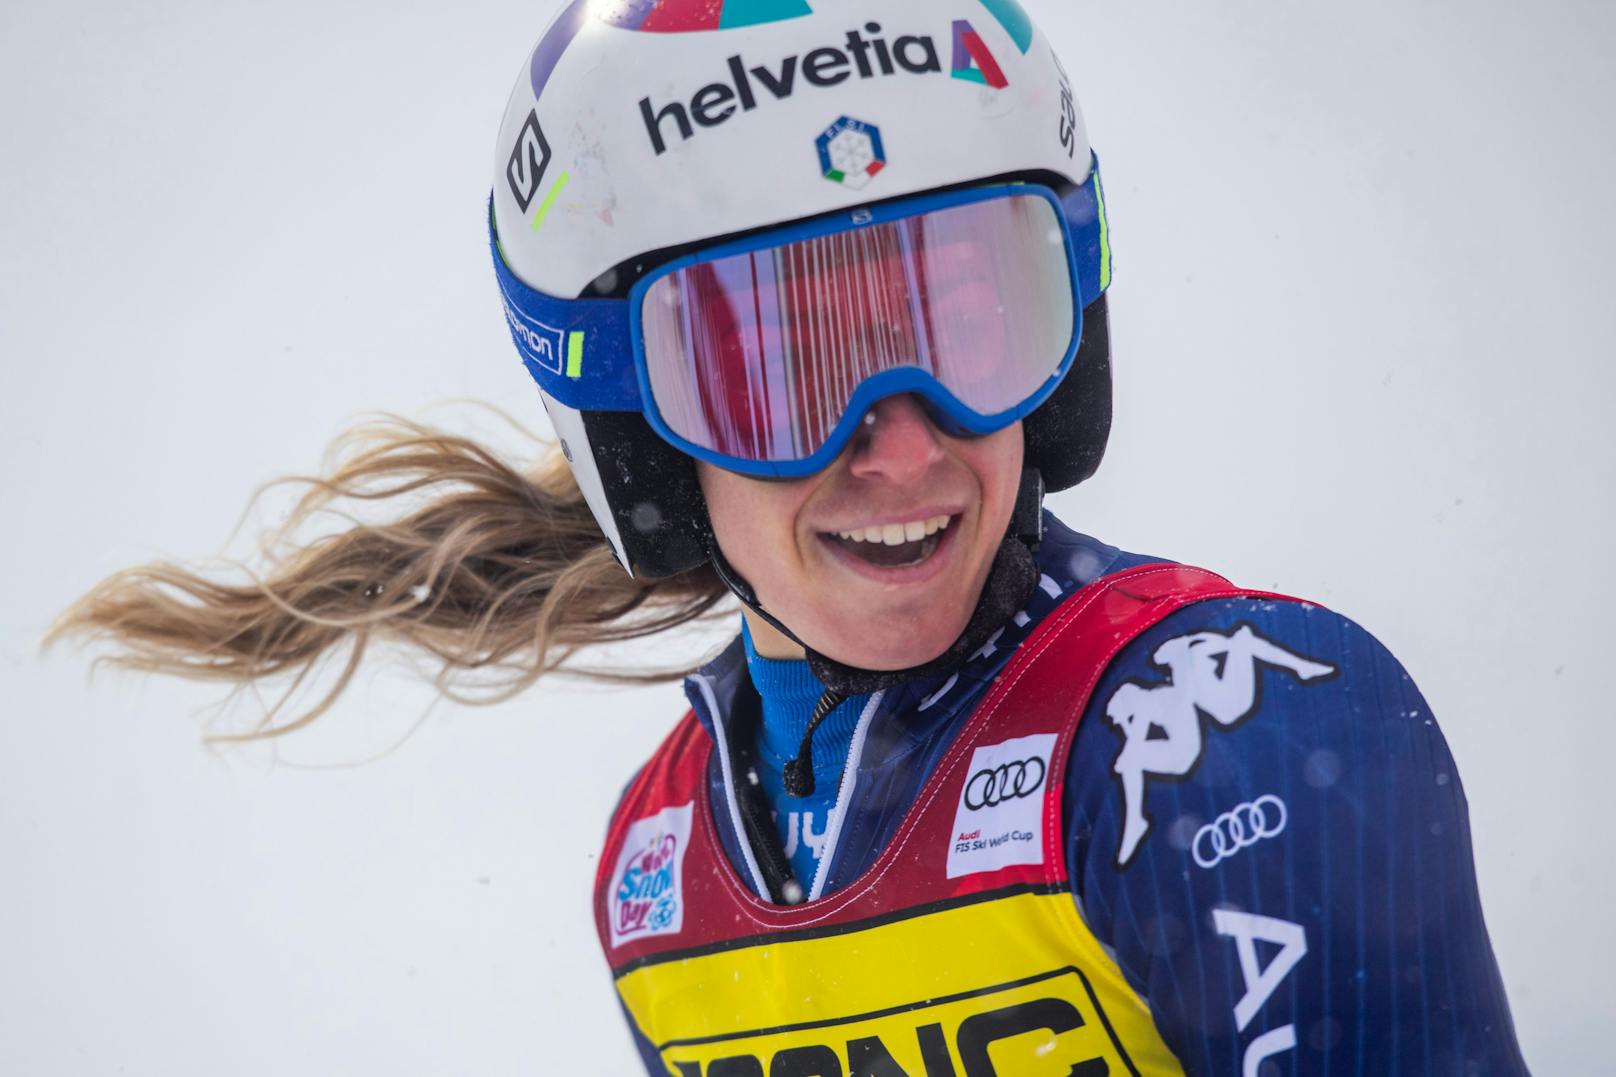 Somit ging es in Courchevel weiter. Marta Bassino gewann den Riesentorlauf – wie in Sölden. Katharina Liensberger wurde Sechste, Stephanie Brunner Siebente.